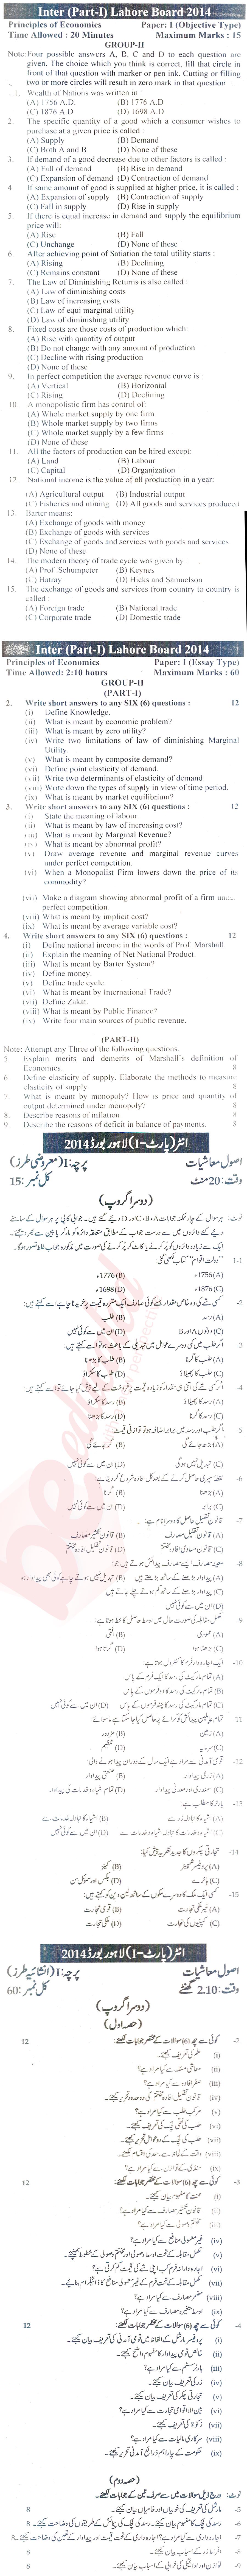 Principles of Economics ICOM Part 1 Past Paper Group 2 BISE Lahore 2014